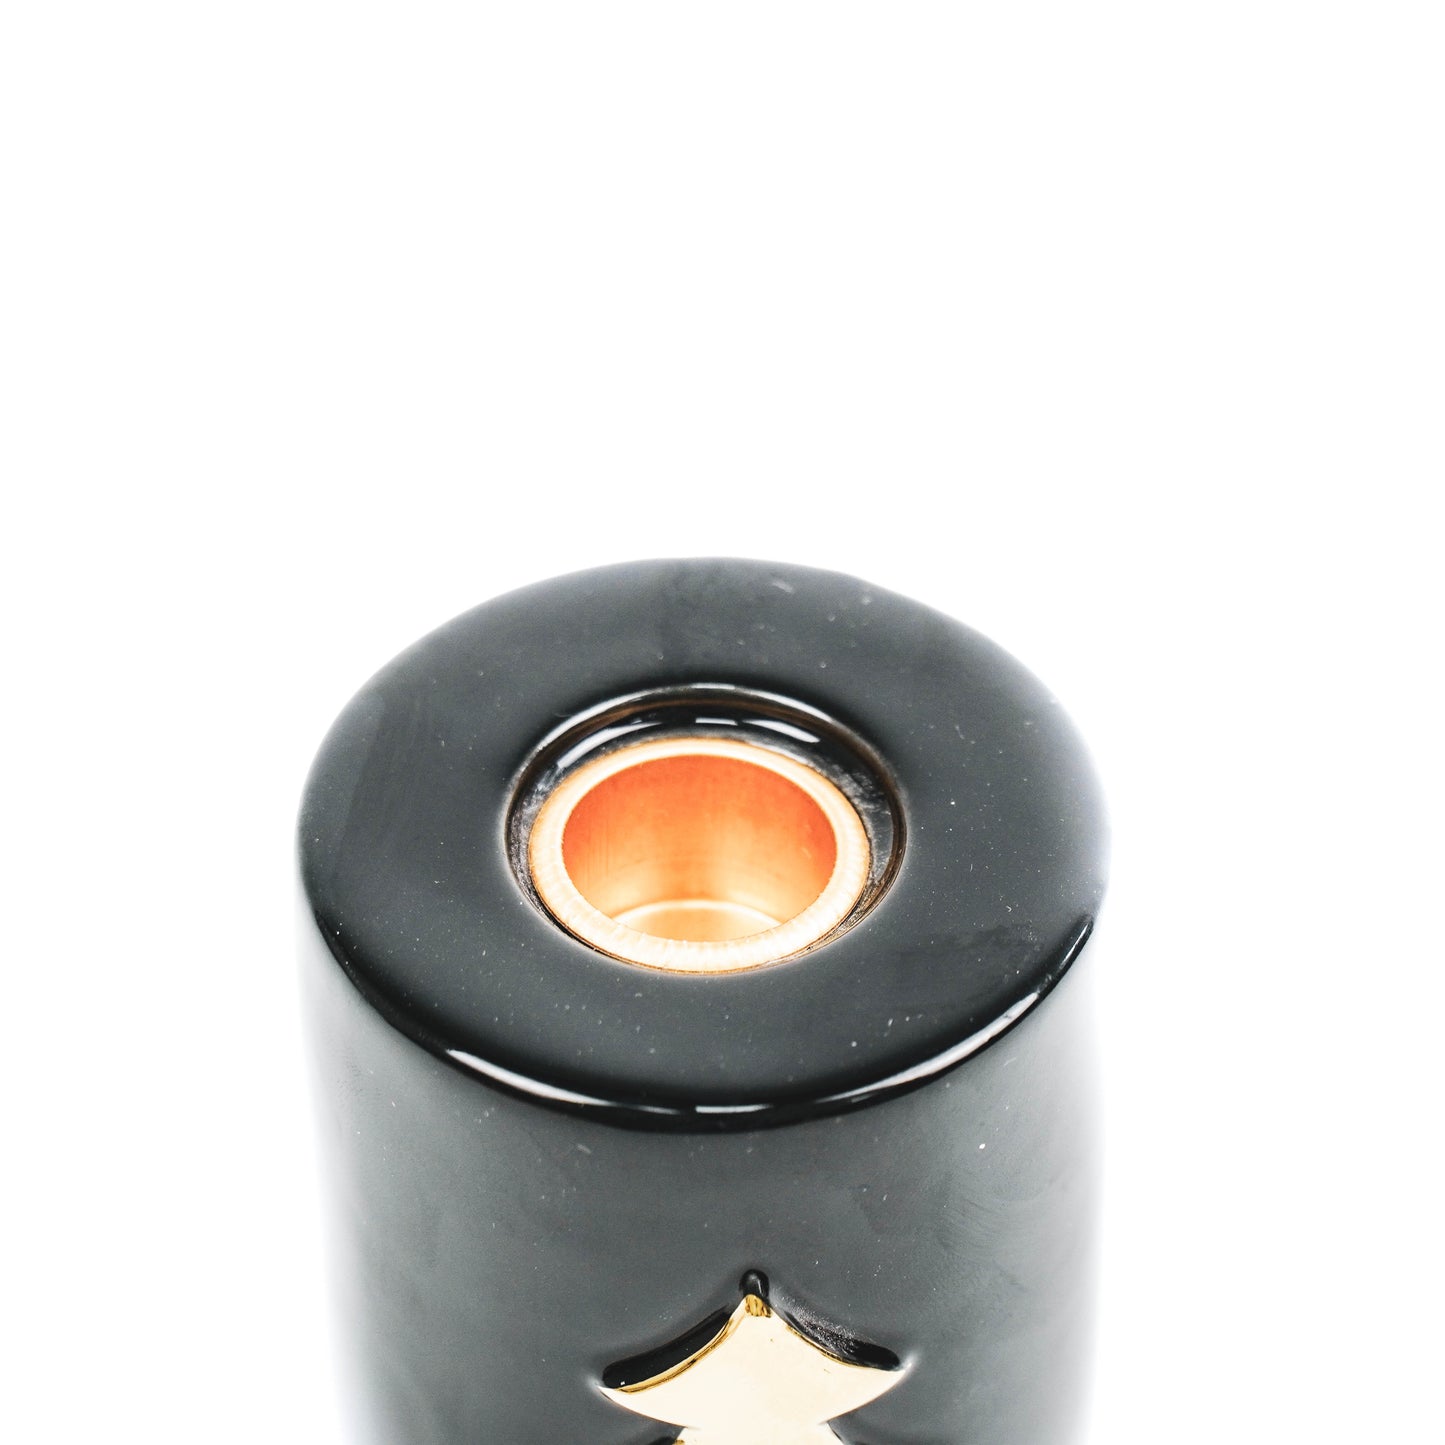 HV Star Candleholder Cilinder - 6x6x8cm - Black/ Gold